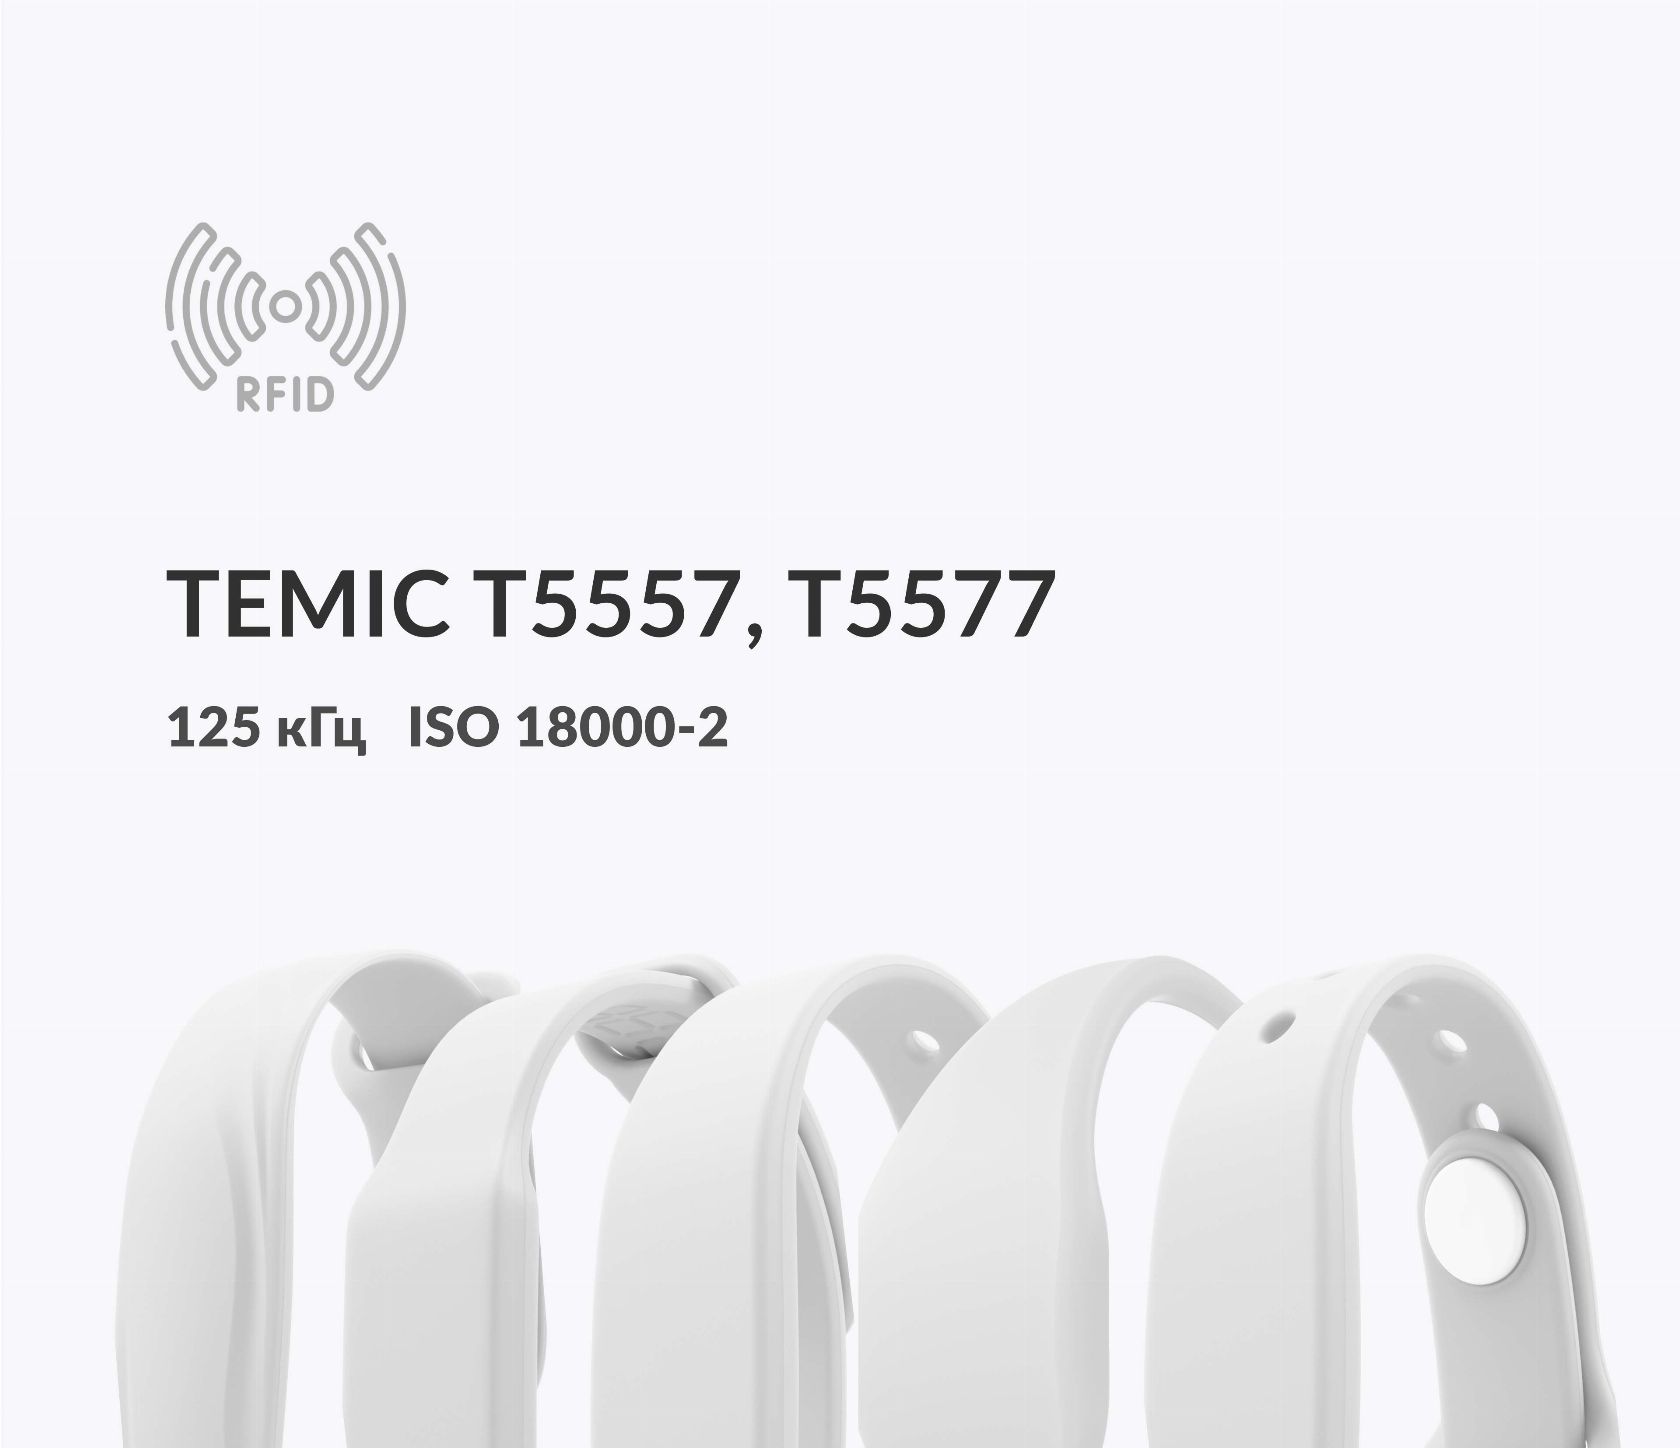 Силиконовые RFID-браслеты T5557, T5577 Temic